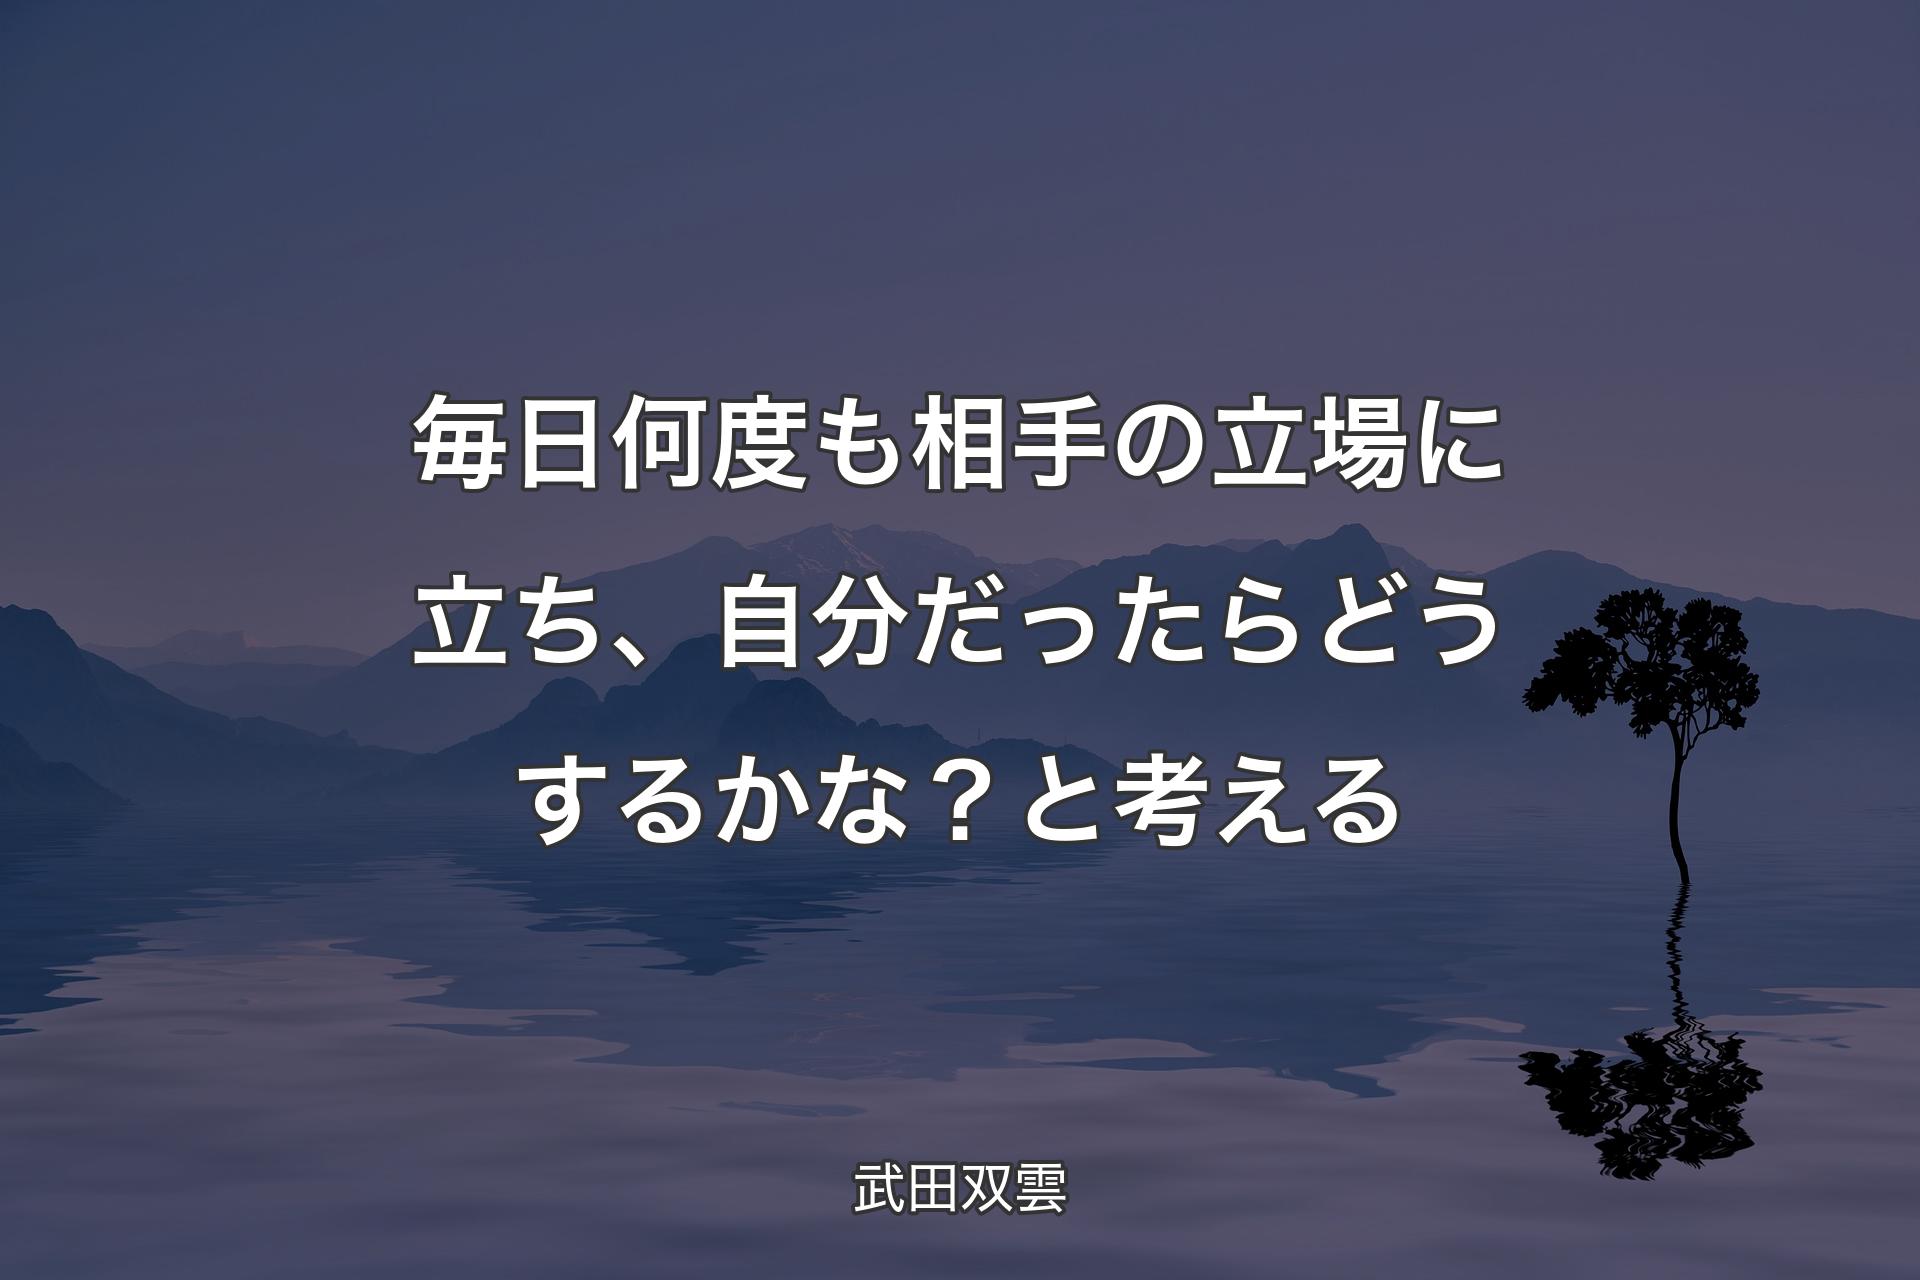 【背景4】毎日何度も相手の立場に立ち、自分だったらどうするかな？と考える - 武田双雲